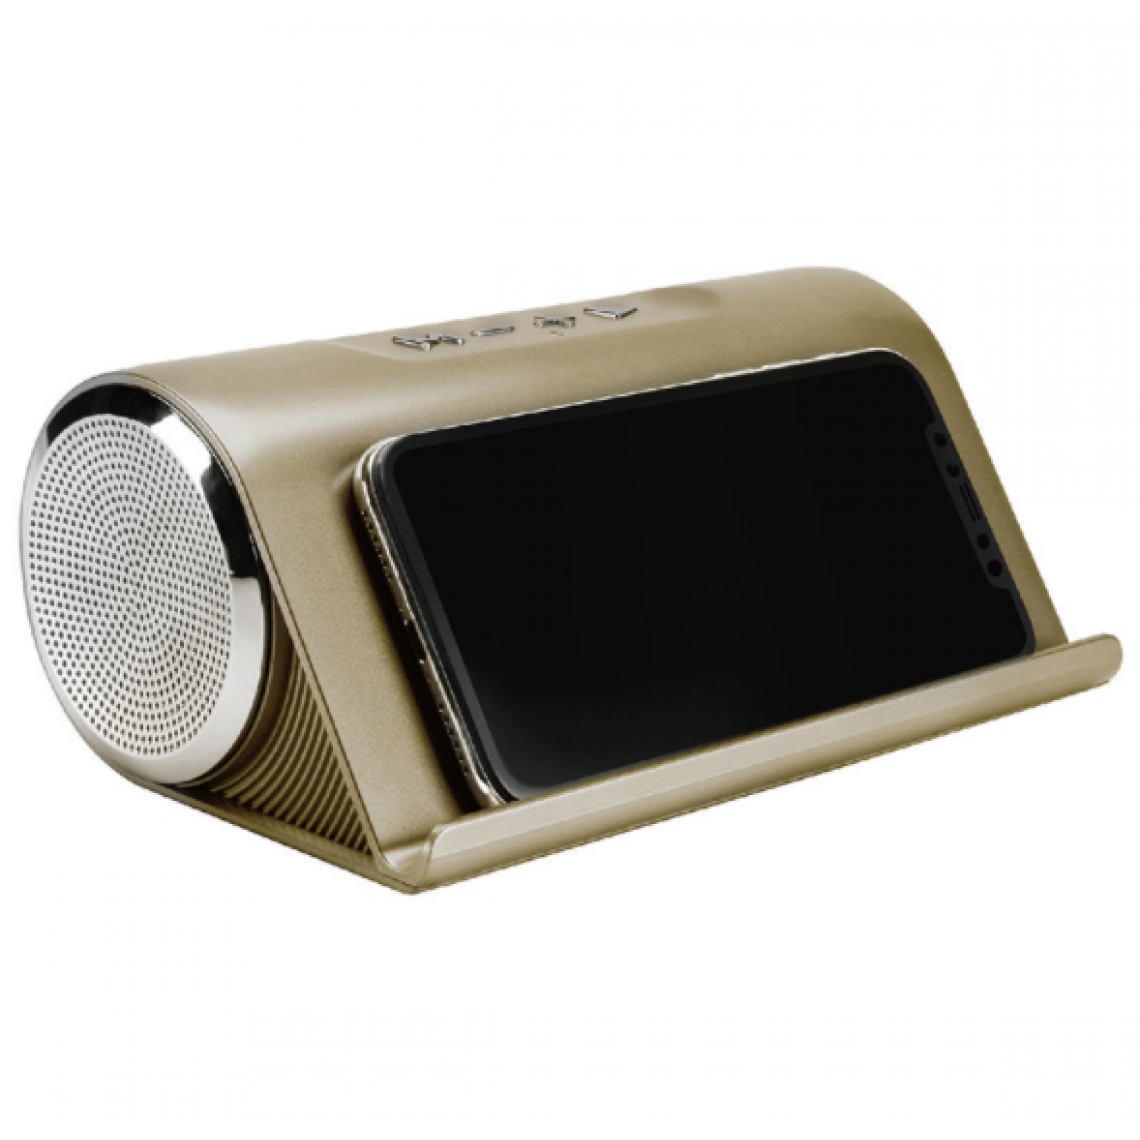 Chrono - Haut-parleur Bluetooth, sans fil, 82 dB, subwoofer, portable, SuperBass, adapté aux smartphones, tablettes, ordinateurs(Or) - Enceintes Hifi